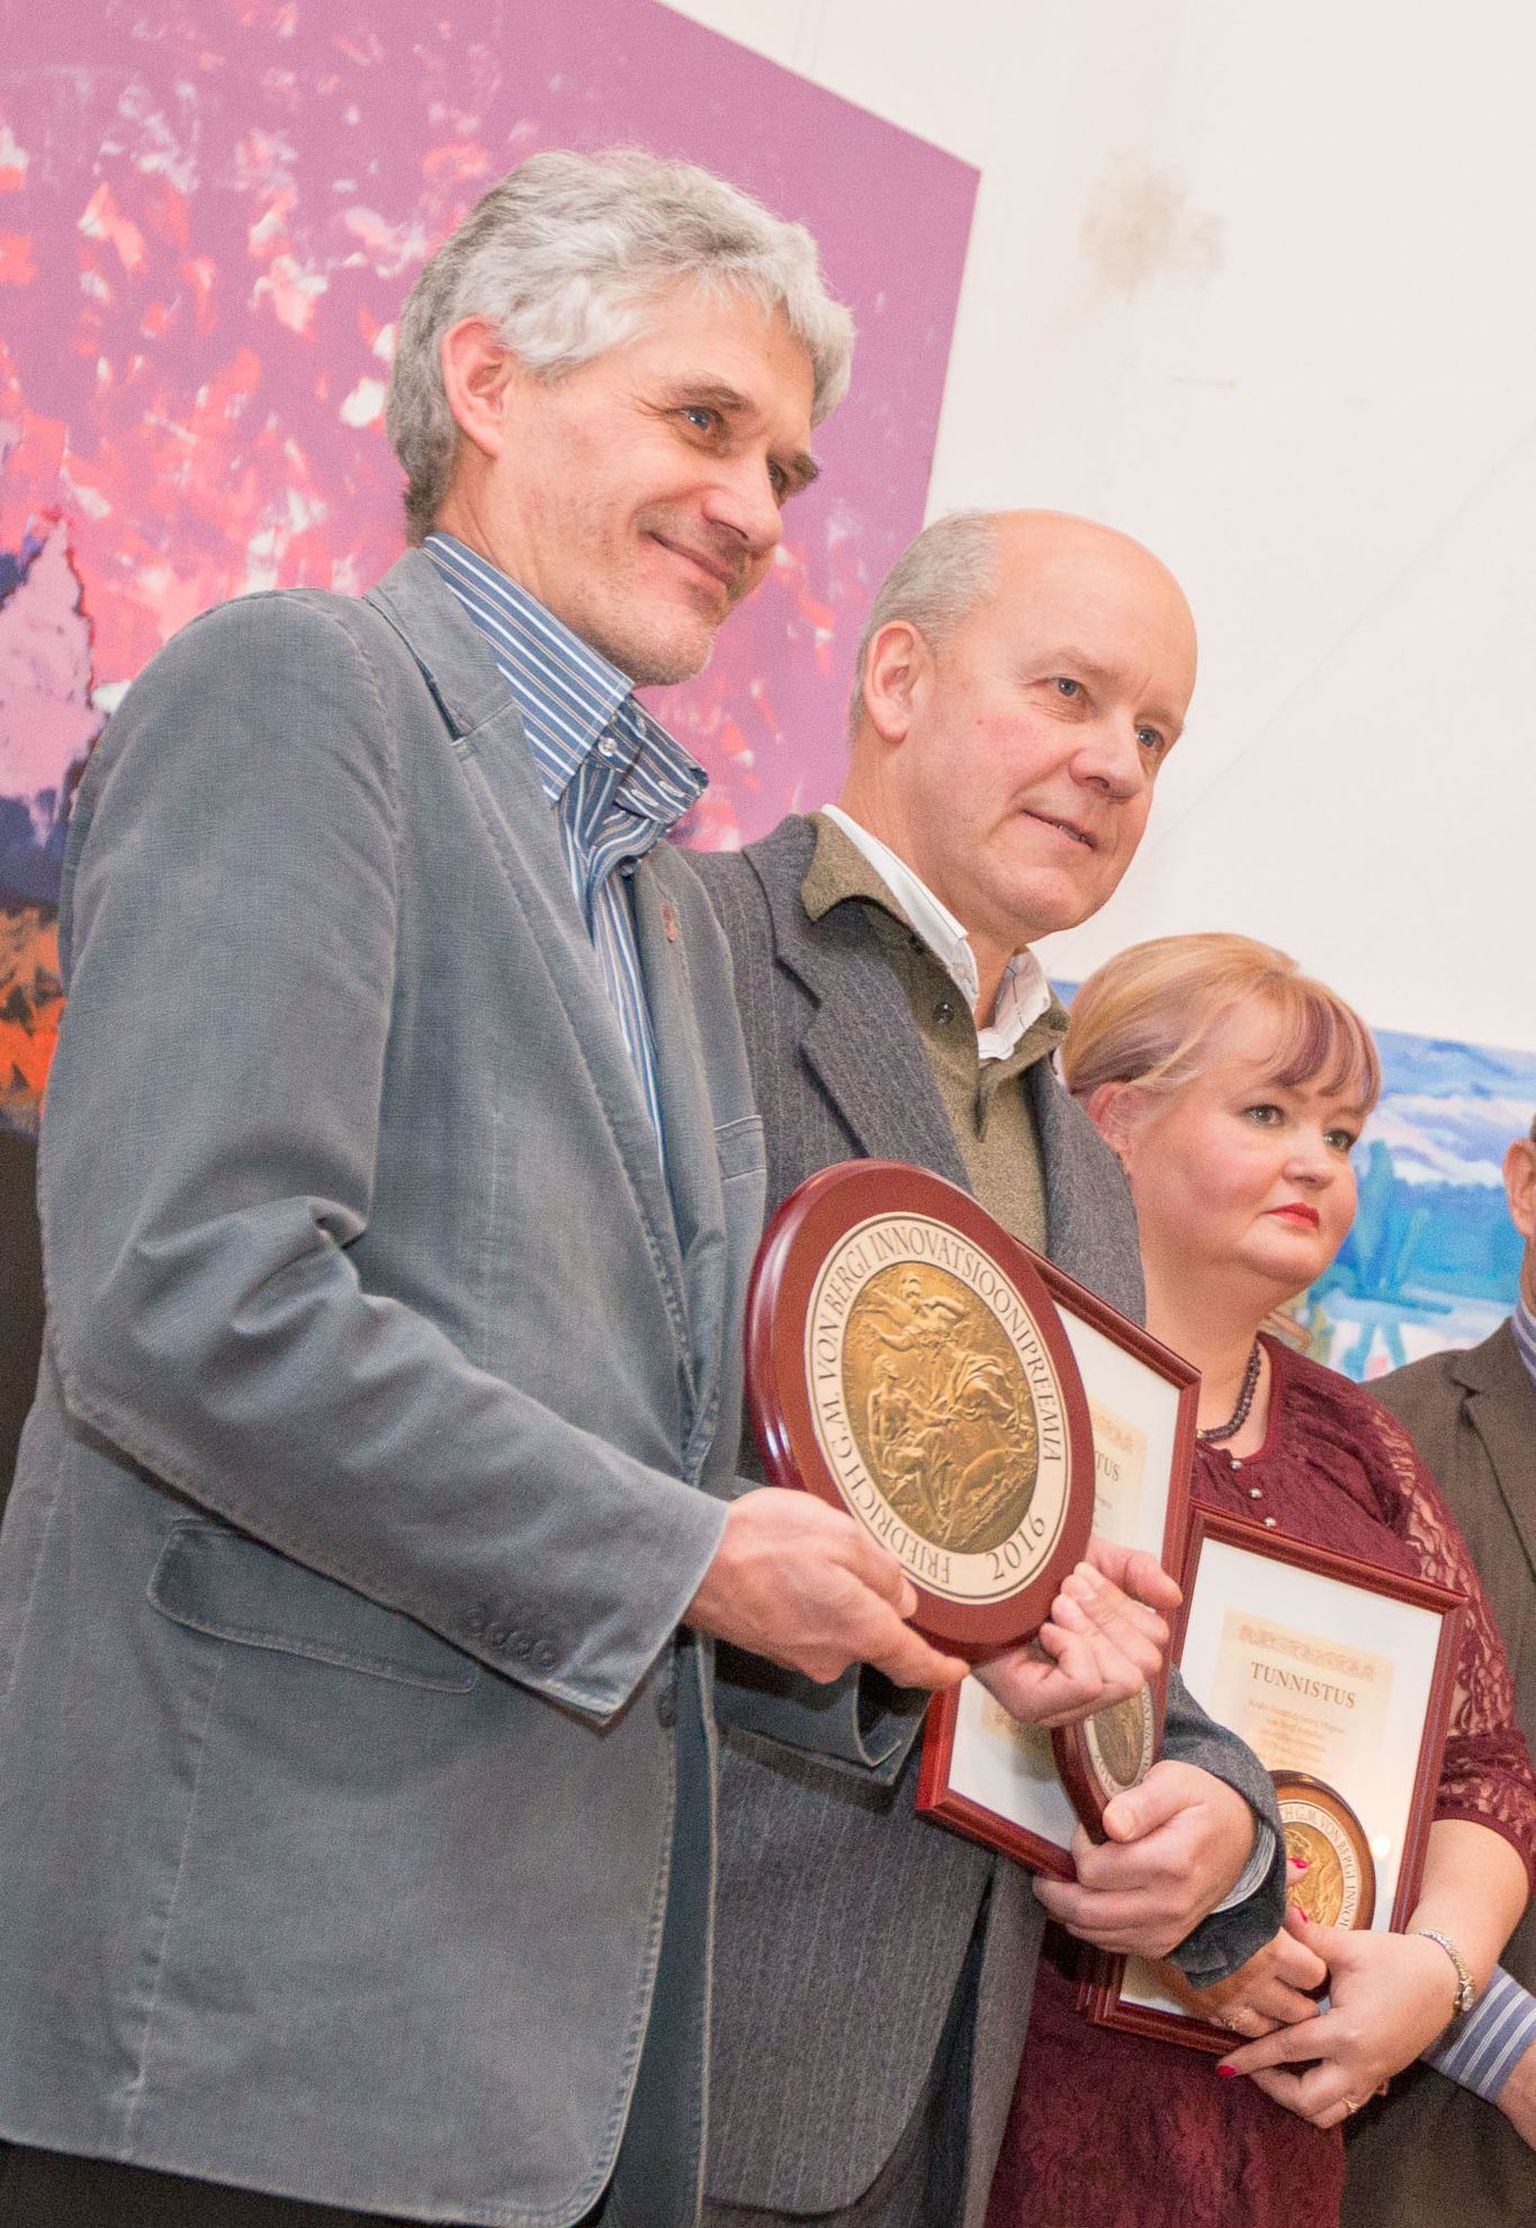 Esimese Bergi-nimelise innovatsioonipreemia võtsid vastu Eesti taimekasvatuse instituudi direktor Mati Koppel (vasakult) ning aretajad Enn Kaljo ja Lea Narits.